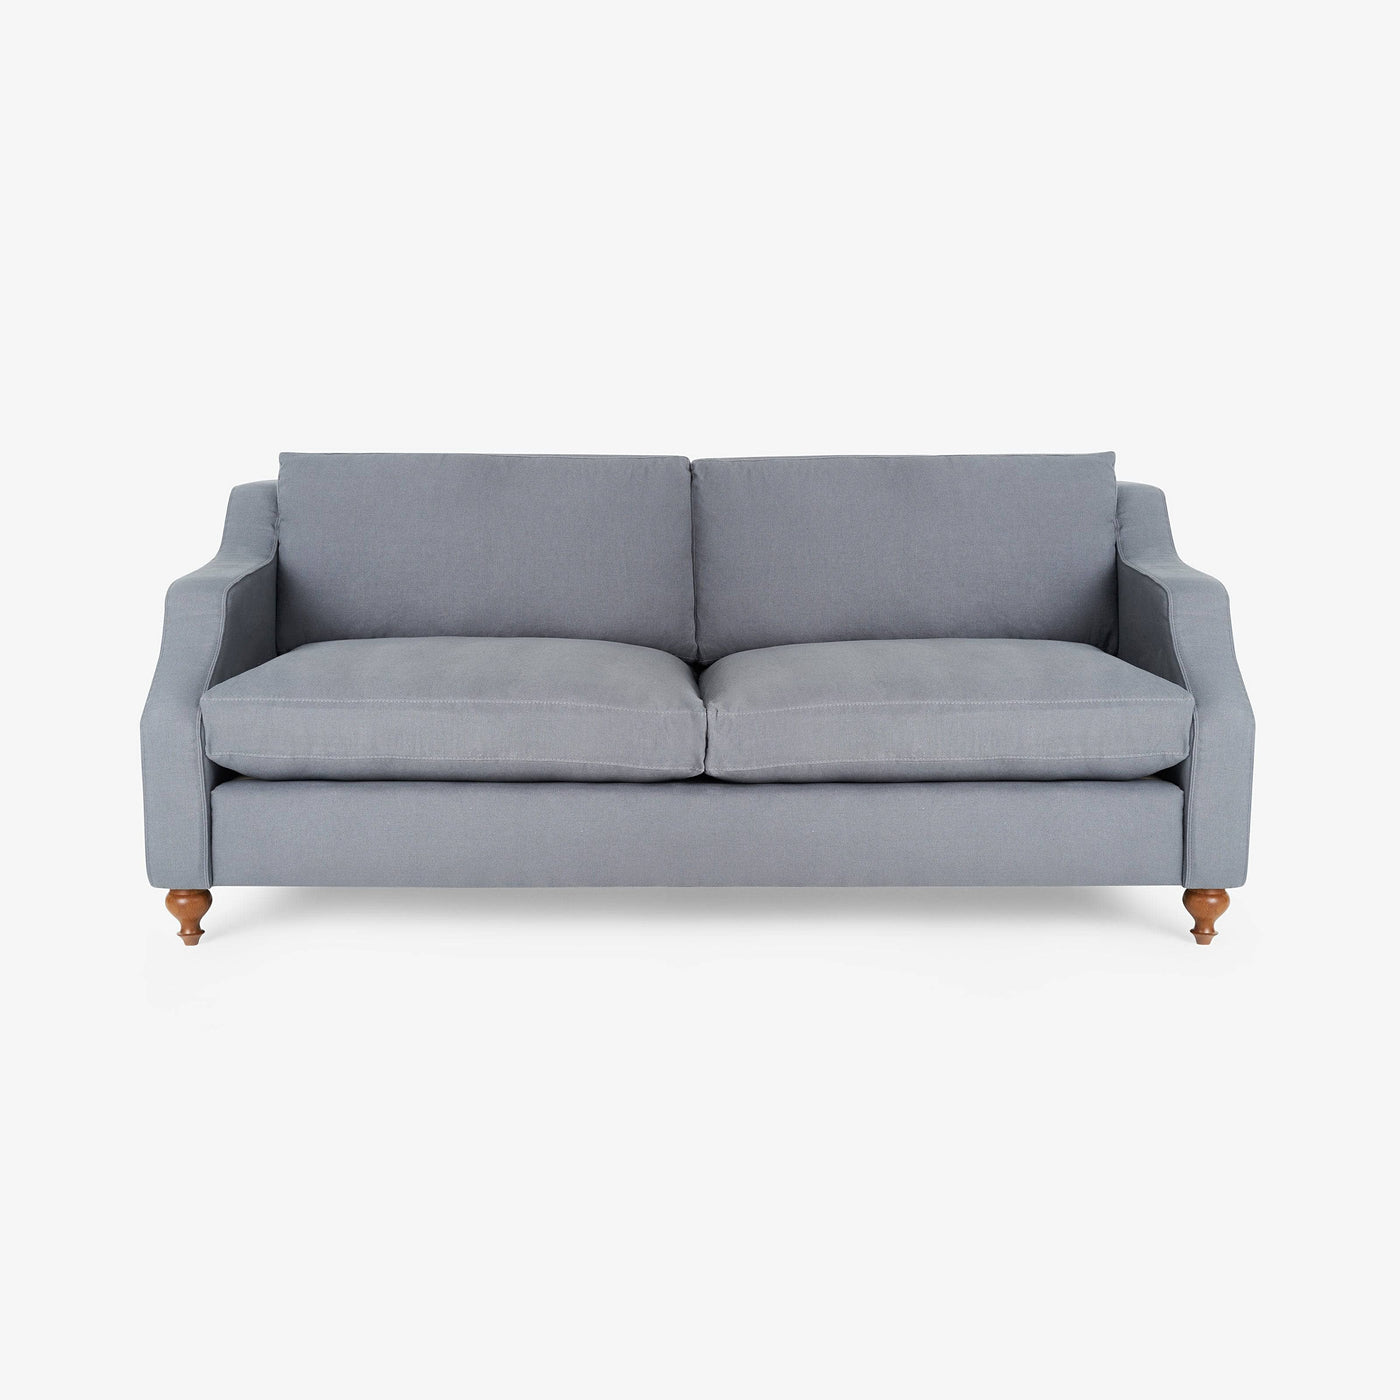 Kristal 3 Seater Linen Sofa, Grey 3 Seater Sofas sazy.com